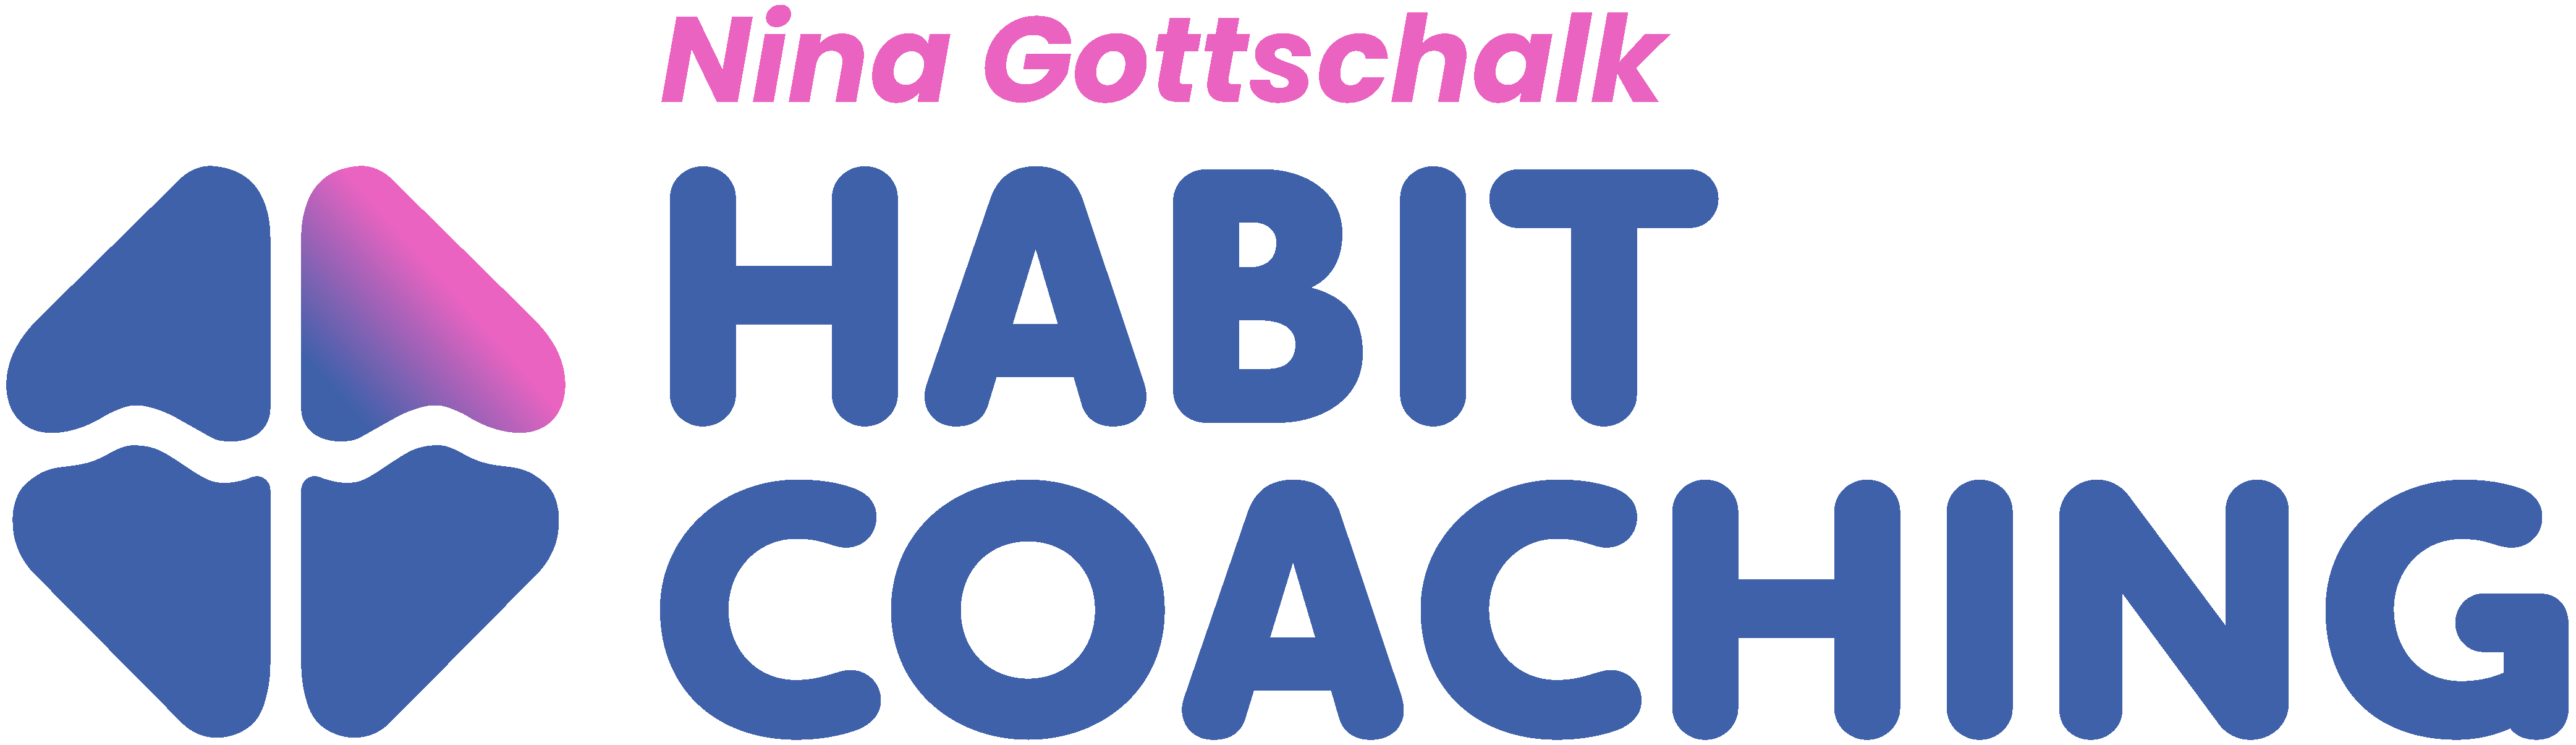 Logo Nina Gottschalk